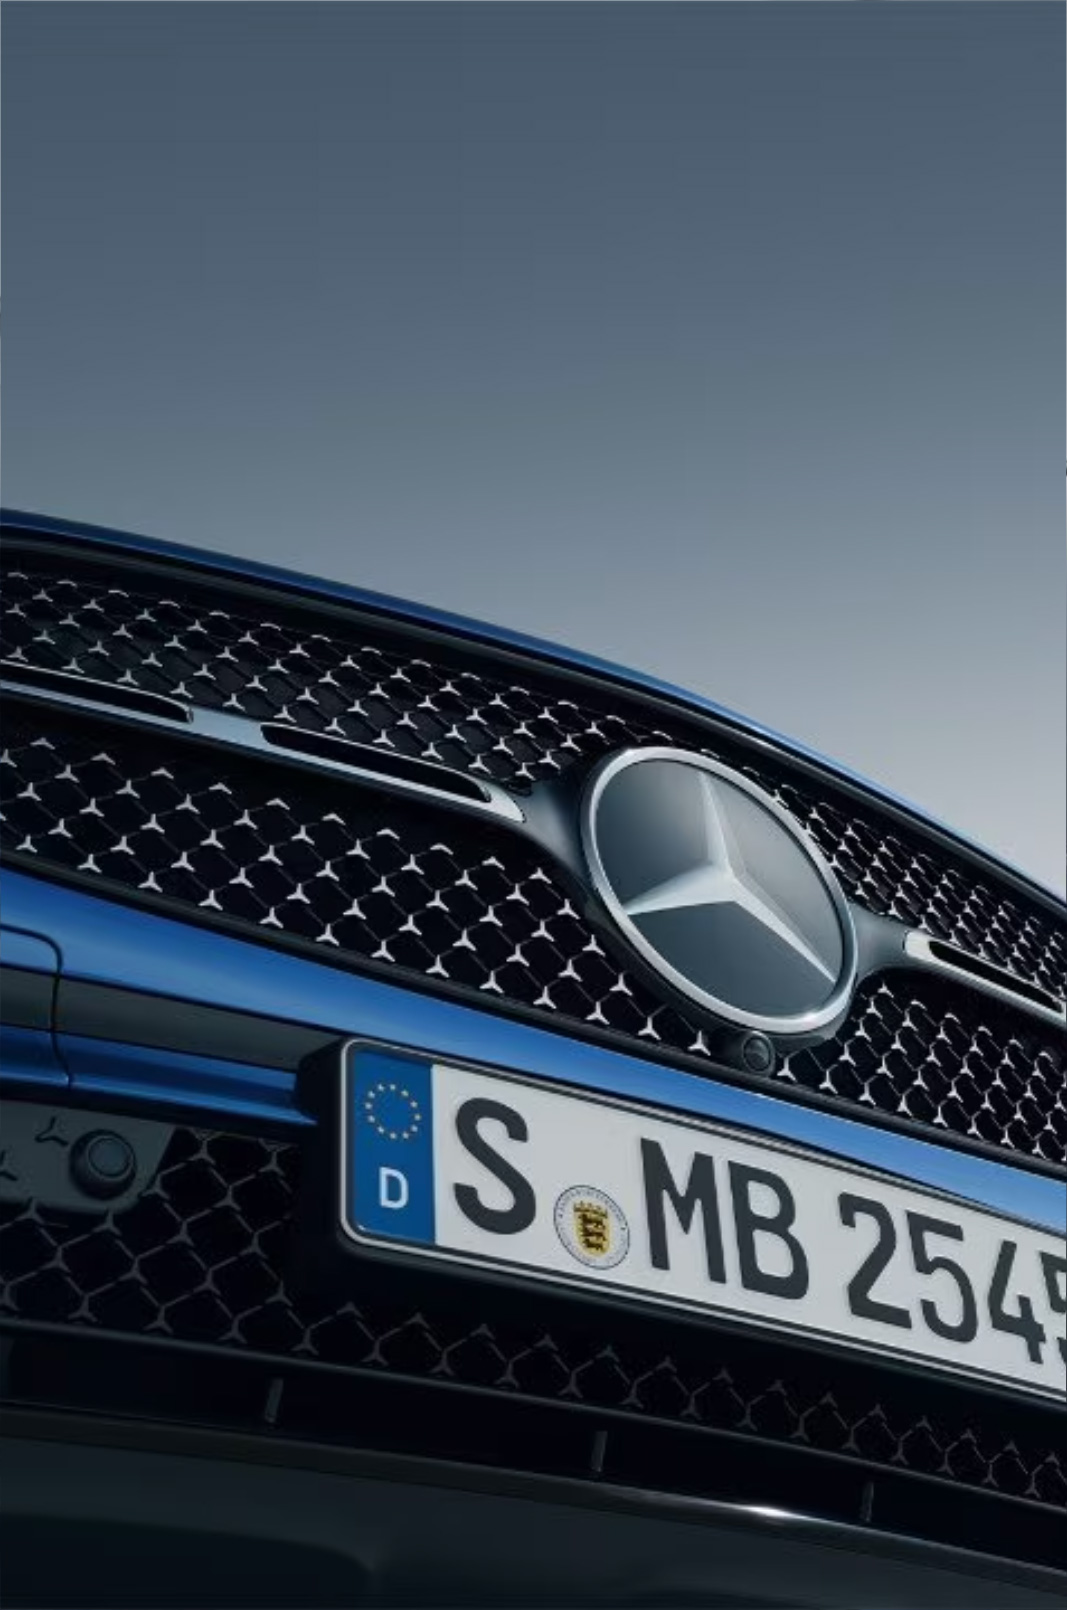 Il nuovo Frontale con mascherina<br />
del radiatore sportiva e Mercedes-Benz Pattern.